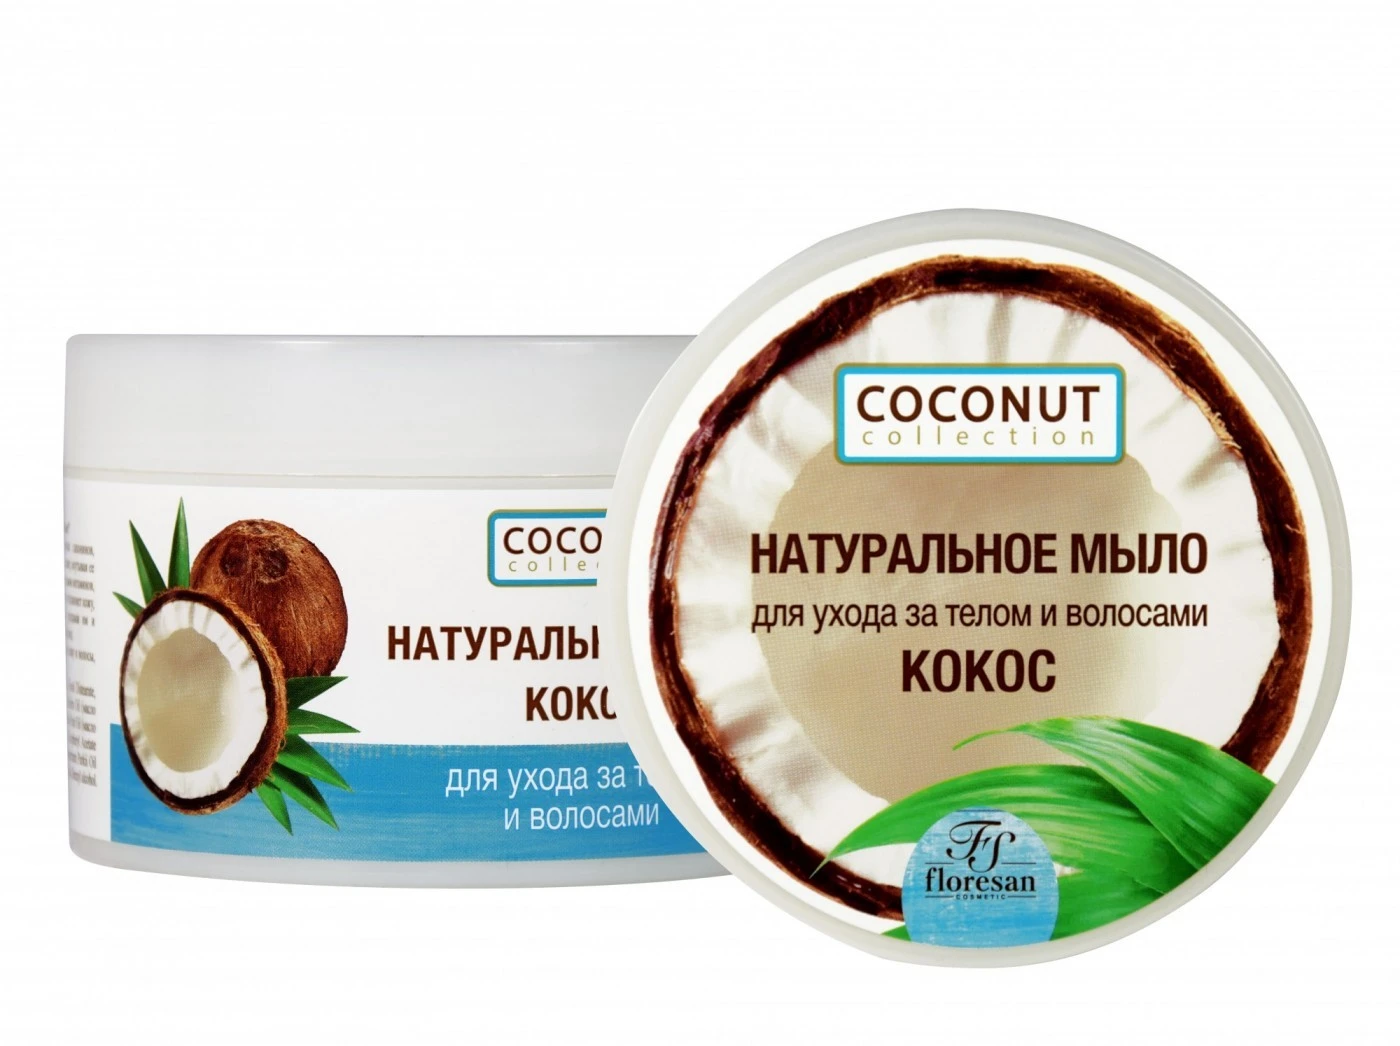 Floresan Coconut Collection Натуральное МЫЛО для ухода за телом и волосами,